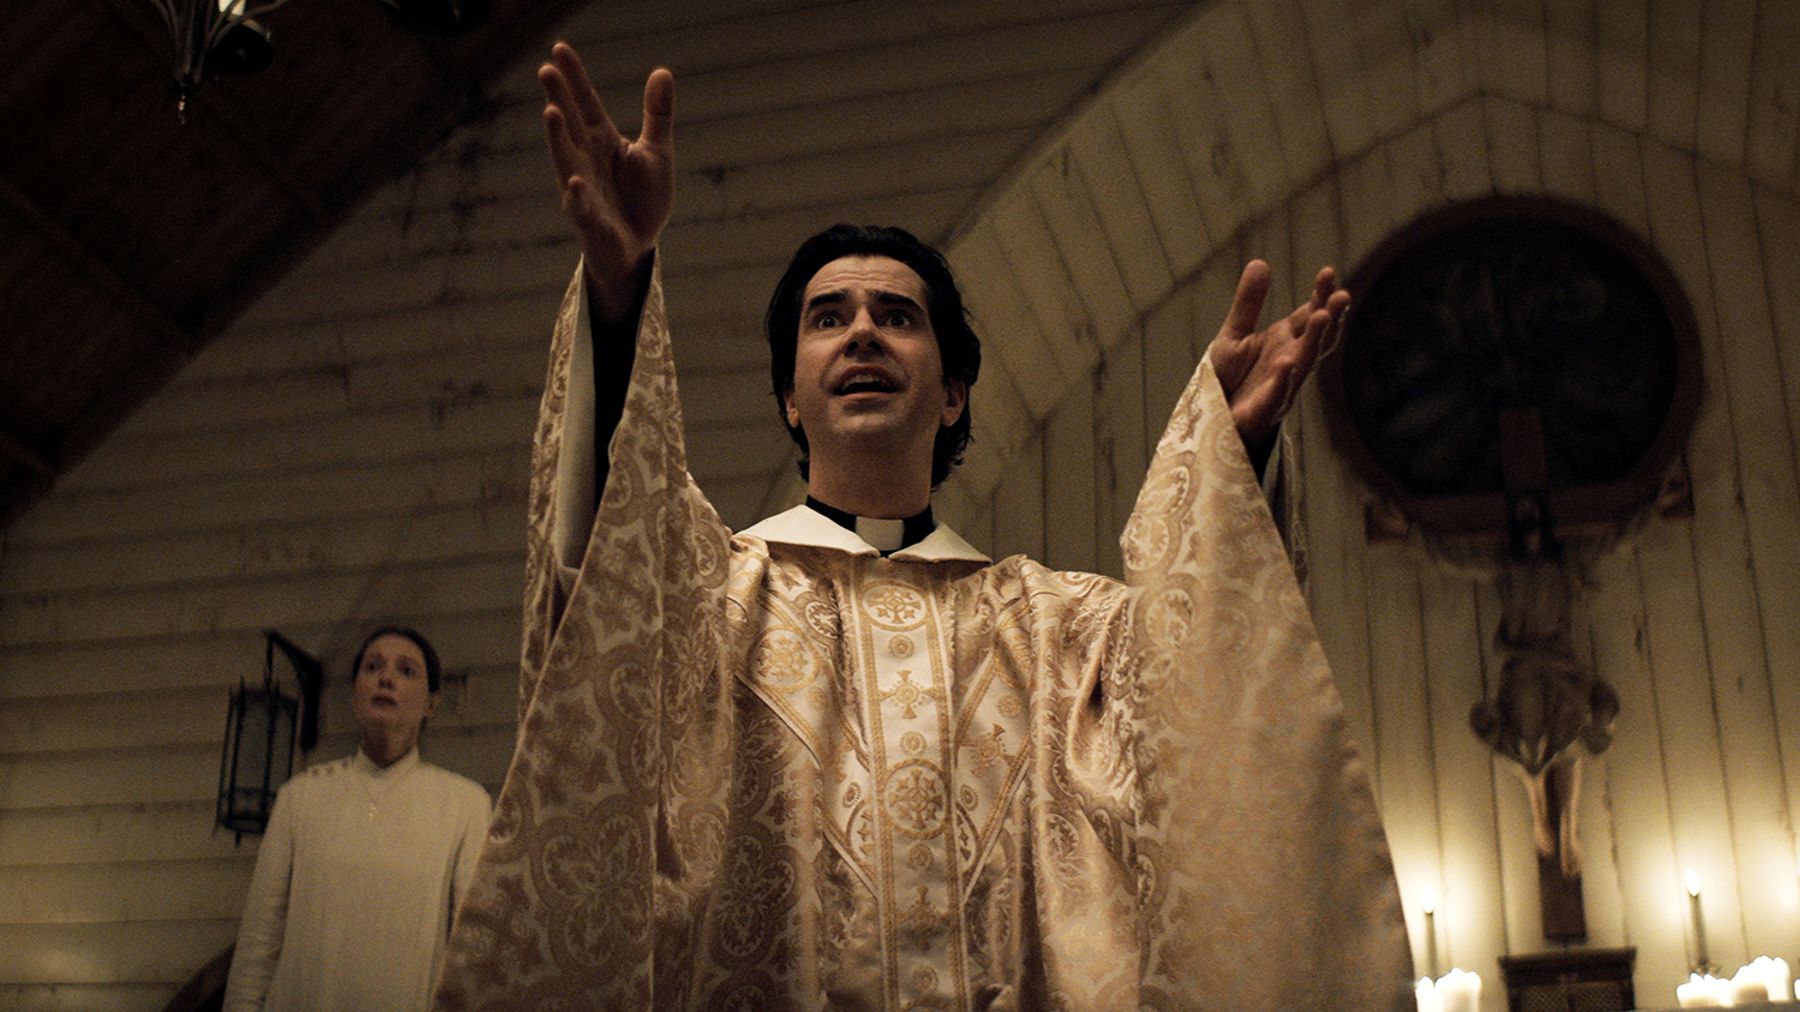 Trailerul Midnight Mass a lui Mike Flanagan îți aduce în față miracole, nebunie și frică